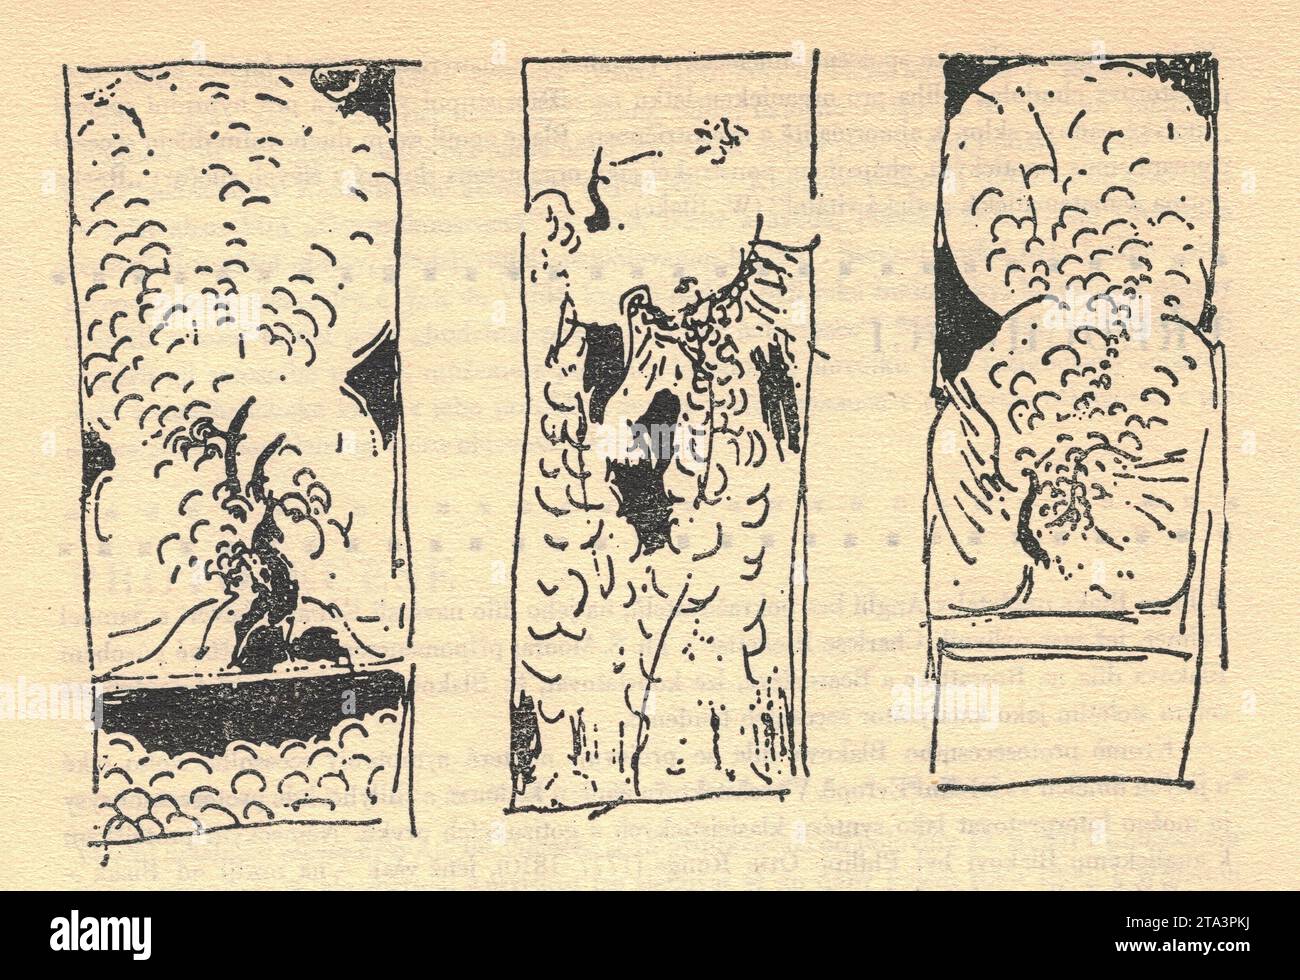 James McNeill Whistler. Design per la decorazione della 'Peacock Room'. Disegno a inchiostro. James Abbott McNeill Whistler (New York, 10 luglio 1834 – New York, 17 luglio 1903) è stato un pittore statunitense, attivo durante l'età dorata americana e con sede principalmente nel Regno Unito. Egli evitò il sentimentalismo e l'allusione morale nella pittura e fu uno dei principali sostenitori del credo "arte per amore dell'arte". James McNeill Whistler trovò un parallelo tra pittura e musica, e intitolò molti dei suoi dipinti "arrangiamenti", "armonie" e "notturni", sottolineando il primato dell'armonia tonale. Foto Stock